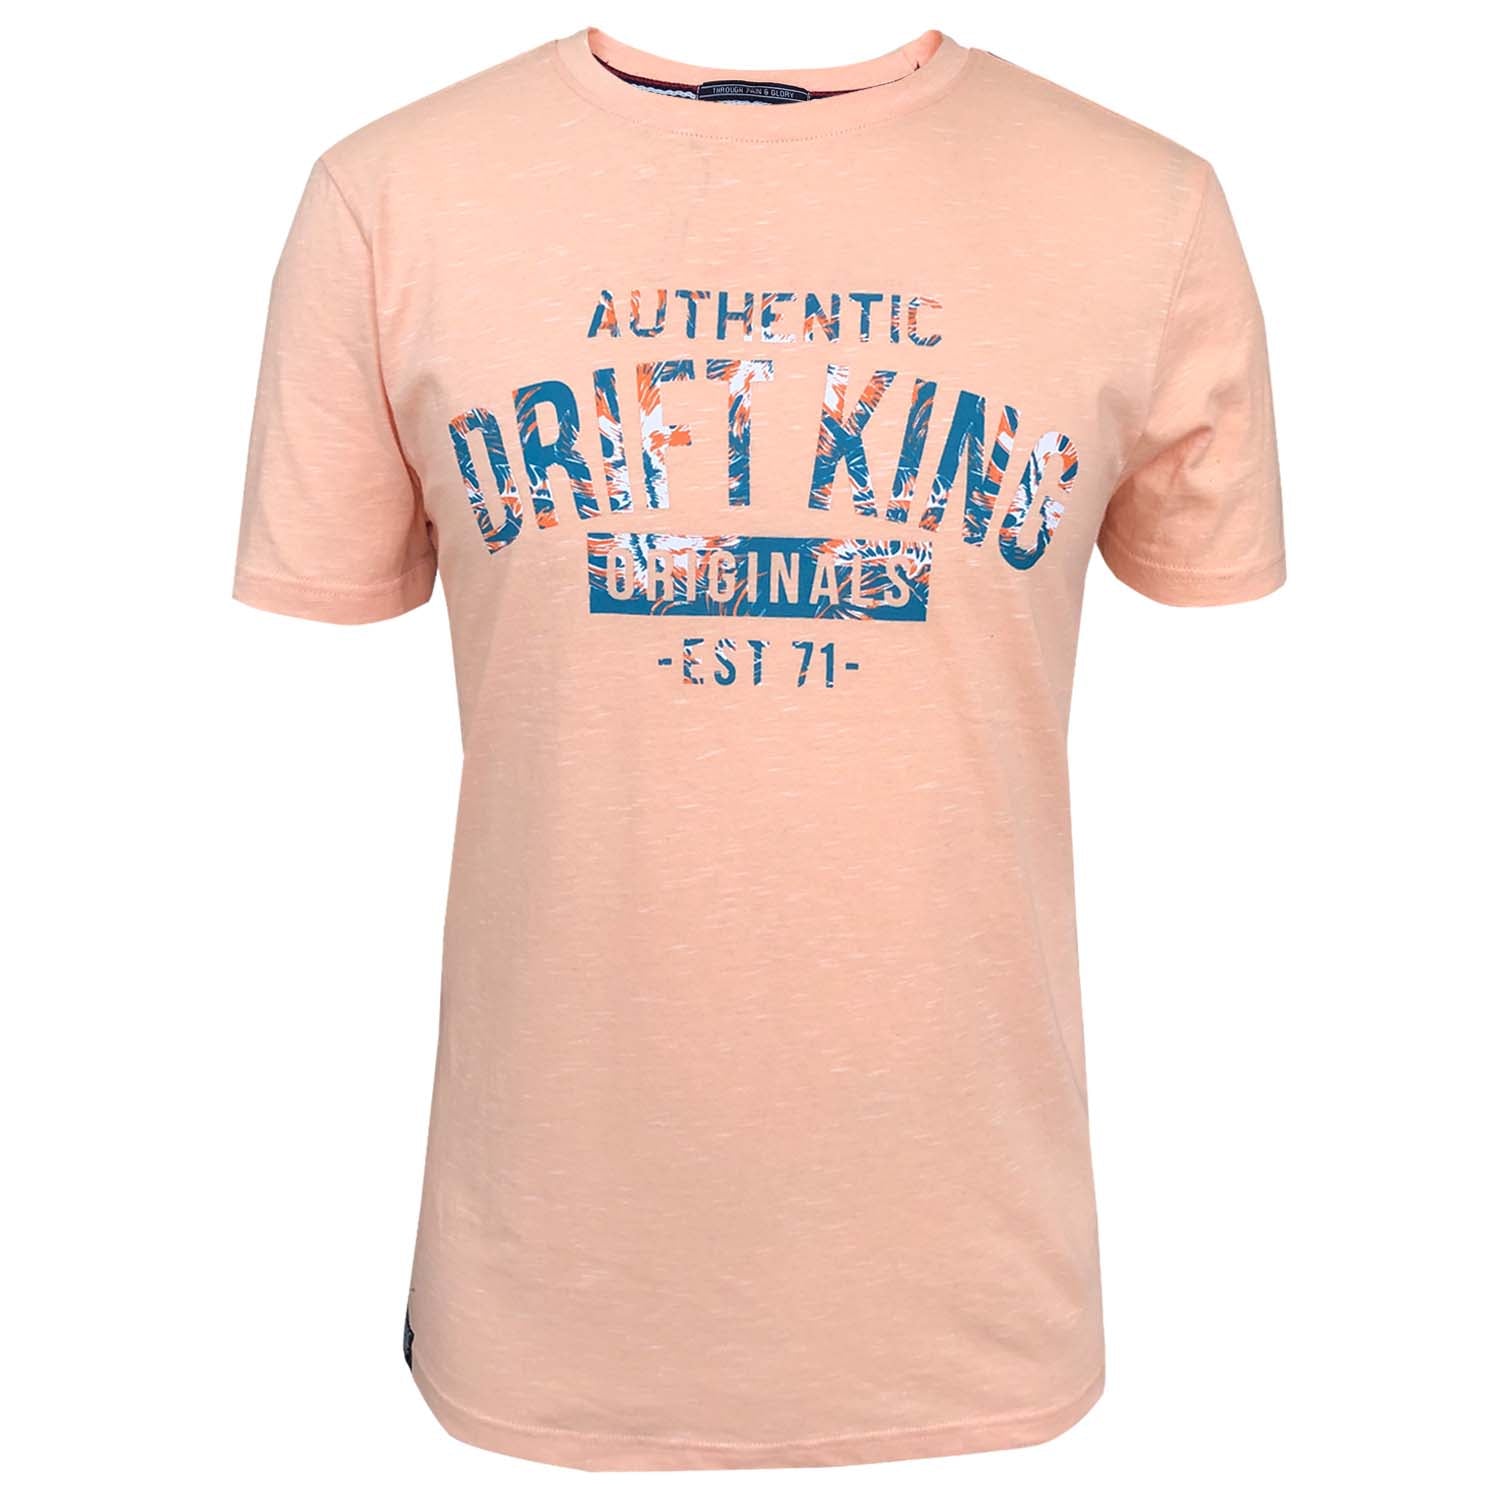 Drift King - Steer T-Shirt - LabelledUp.com